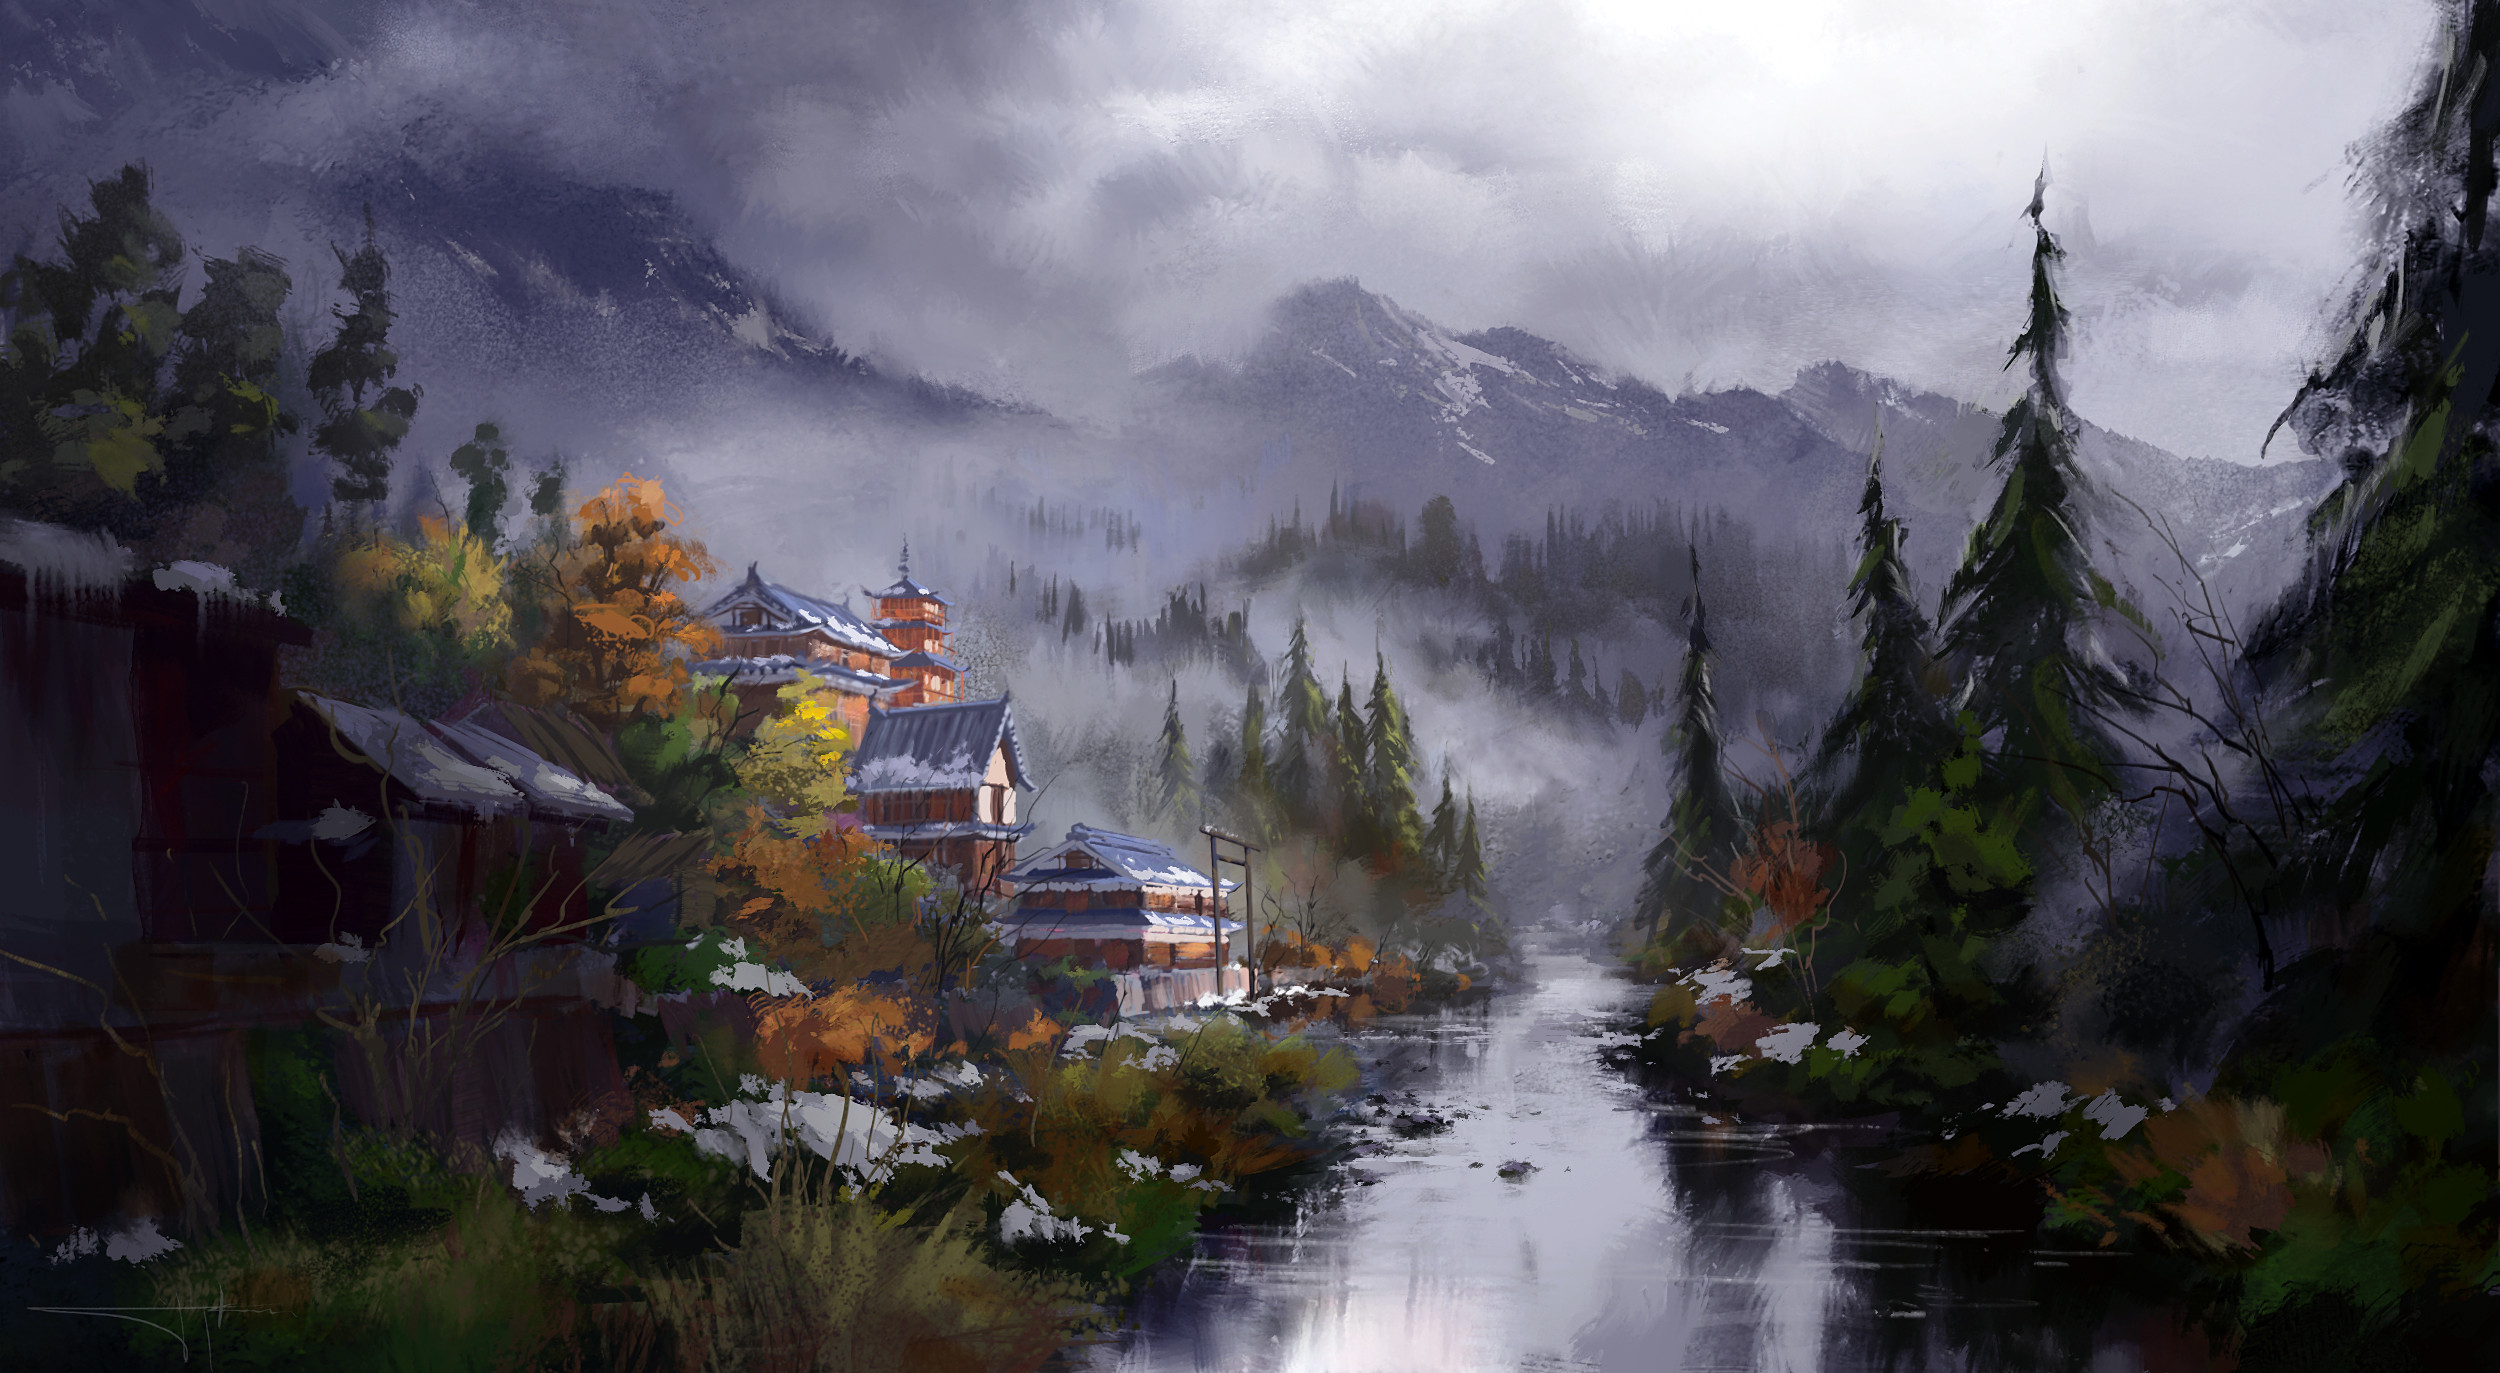 Misty Japan in Autumn